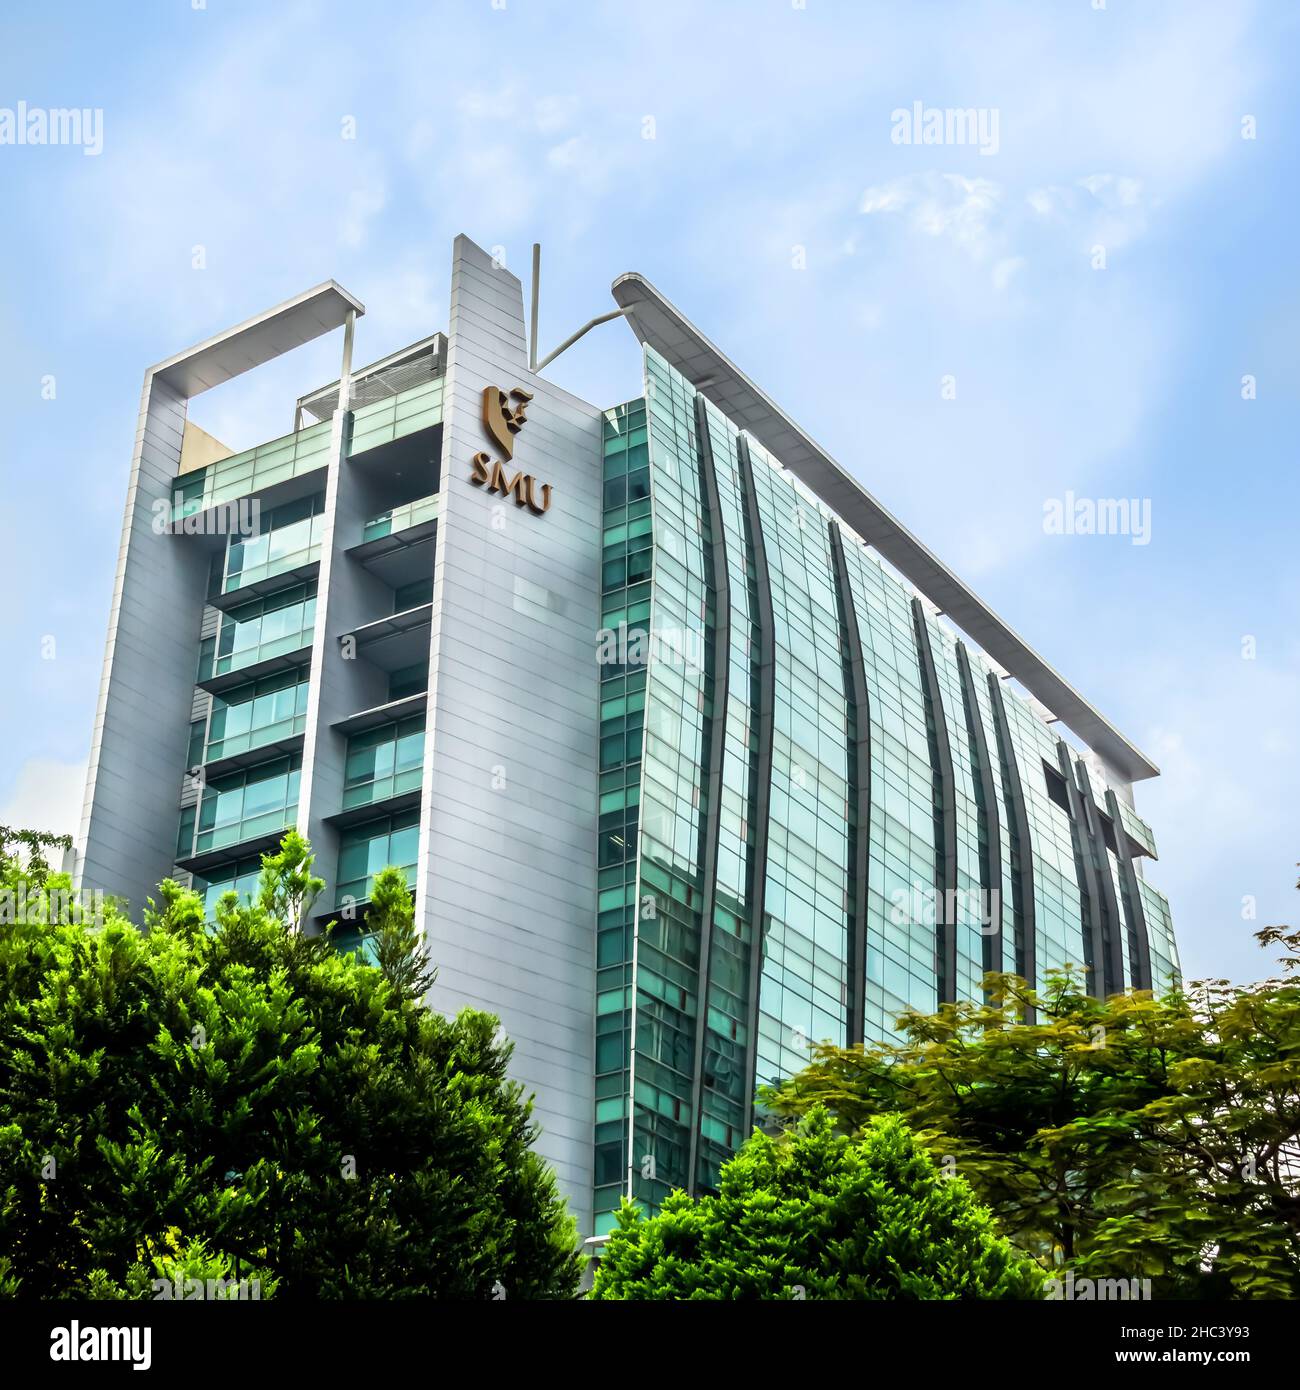 Singapore Management University (SMU) is an autonomous and public university in Singapore. Stock Photo